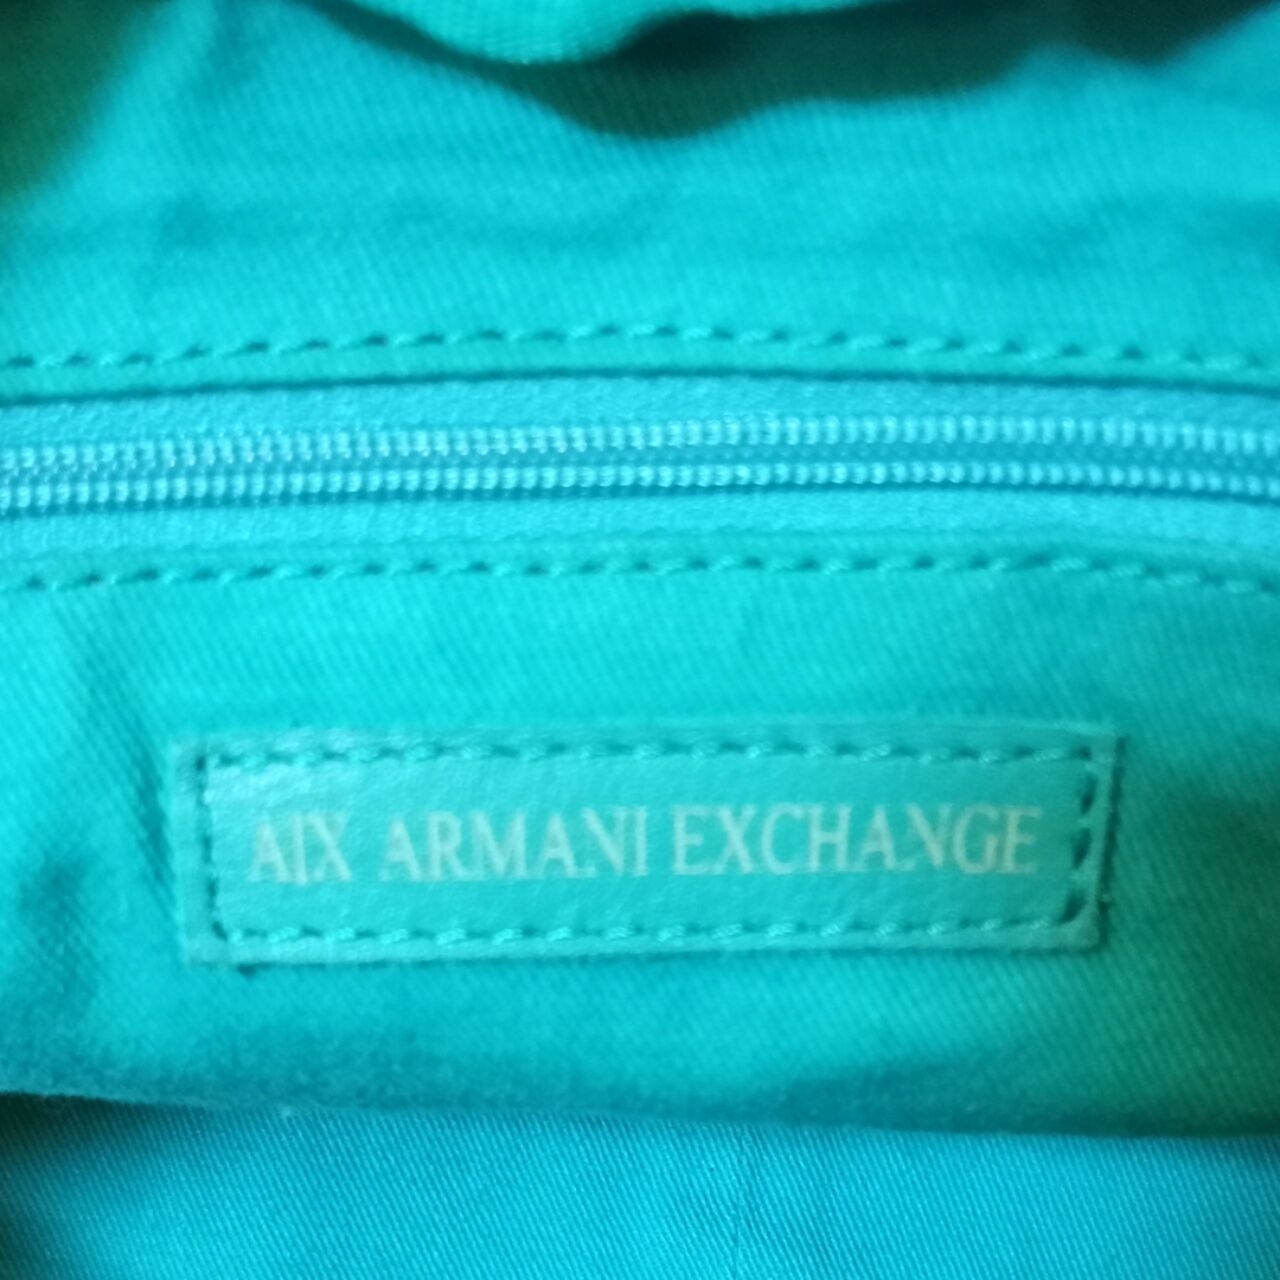 Armani Exchange Teal Shoulder Bag